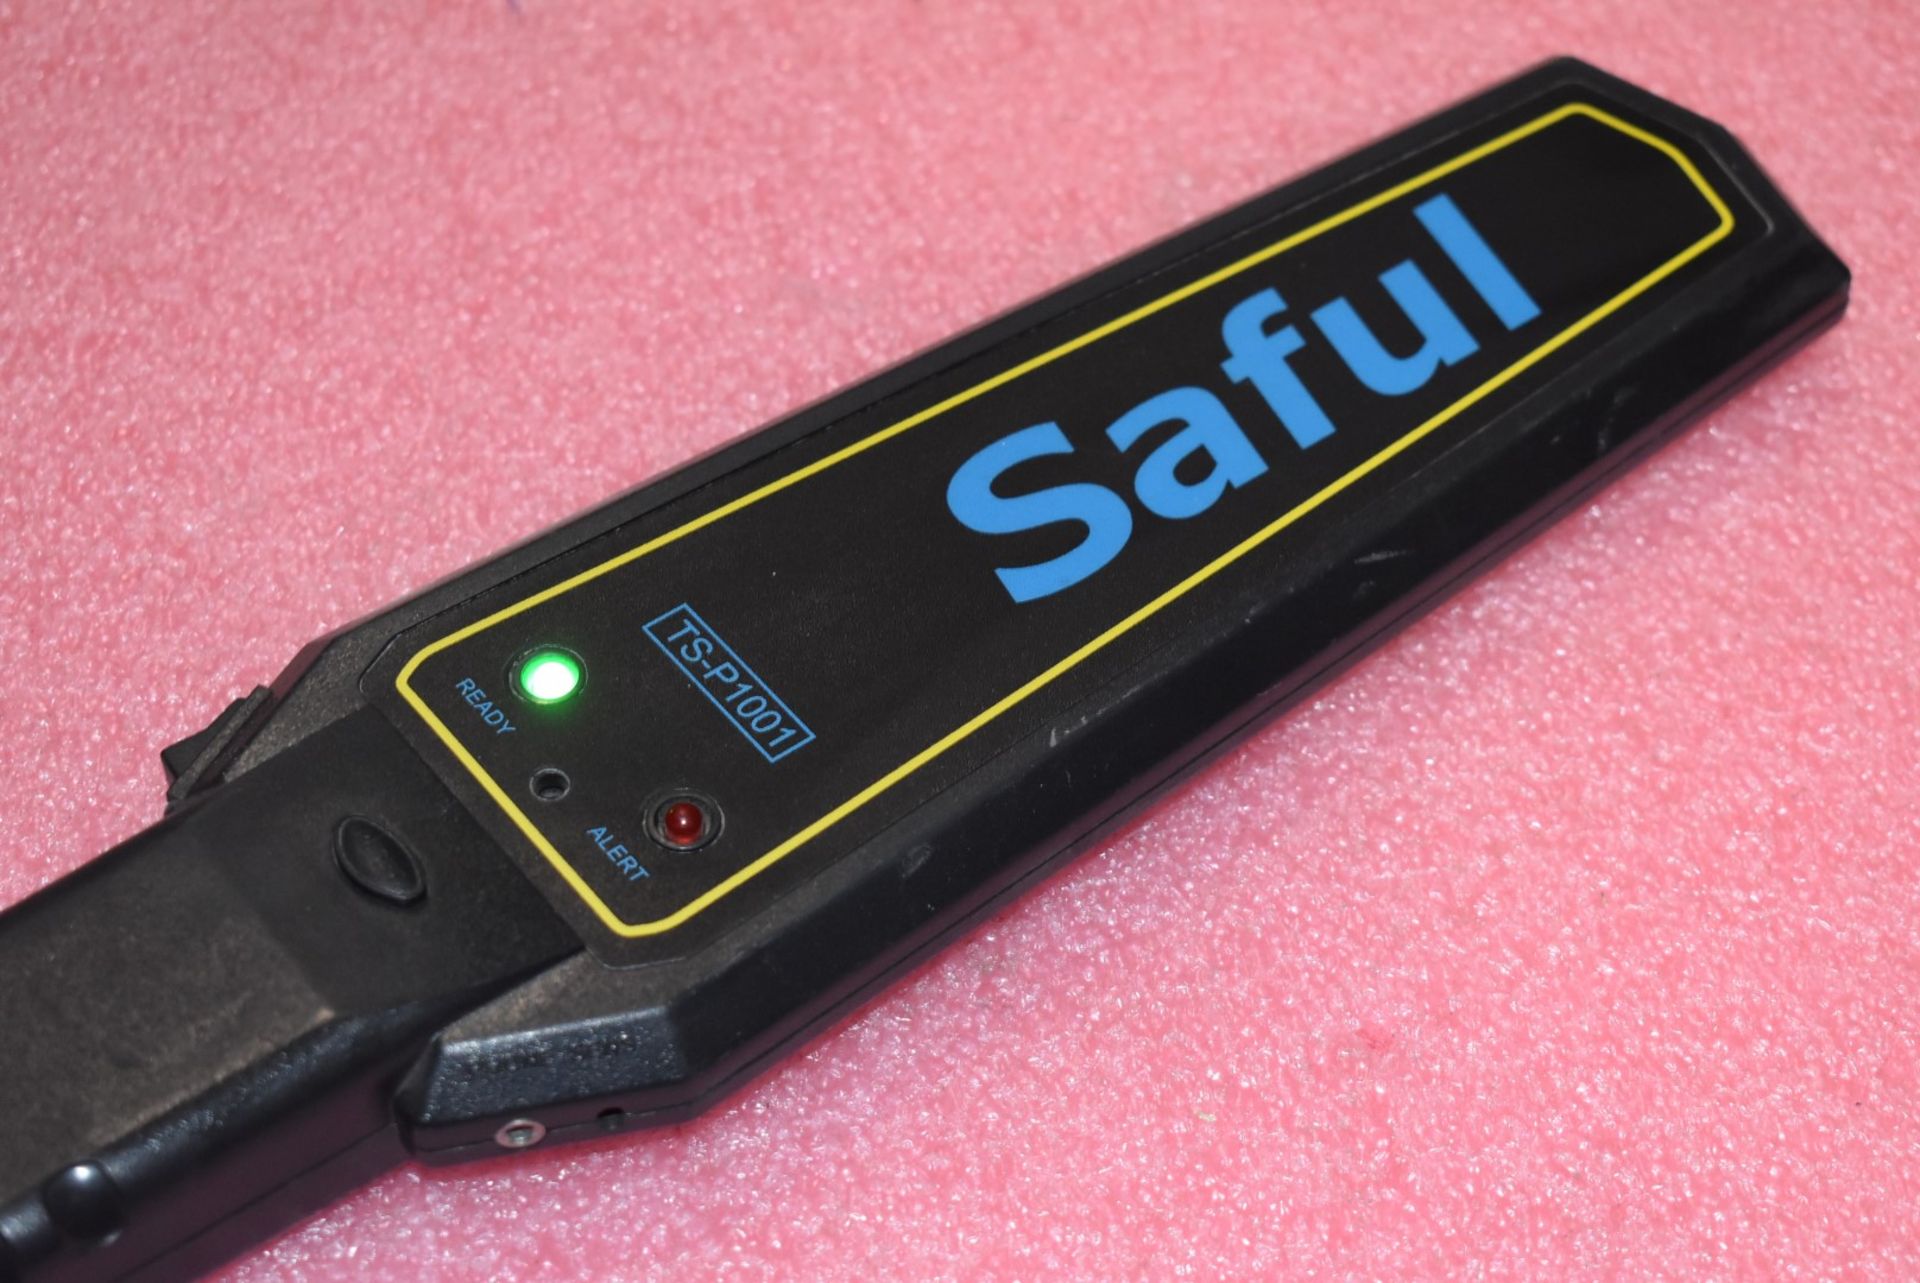 1 x Saful TS-P1001 Handheld Metal Detector - Image 3 of 5